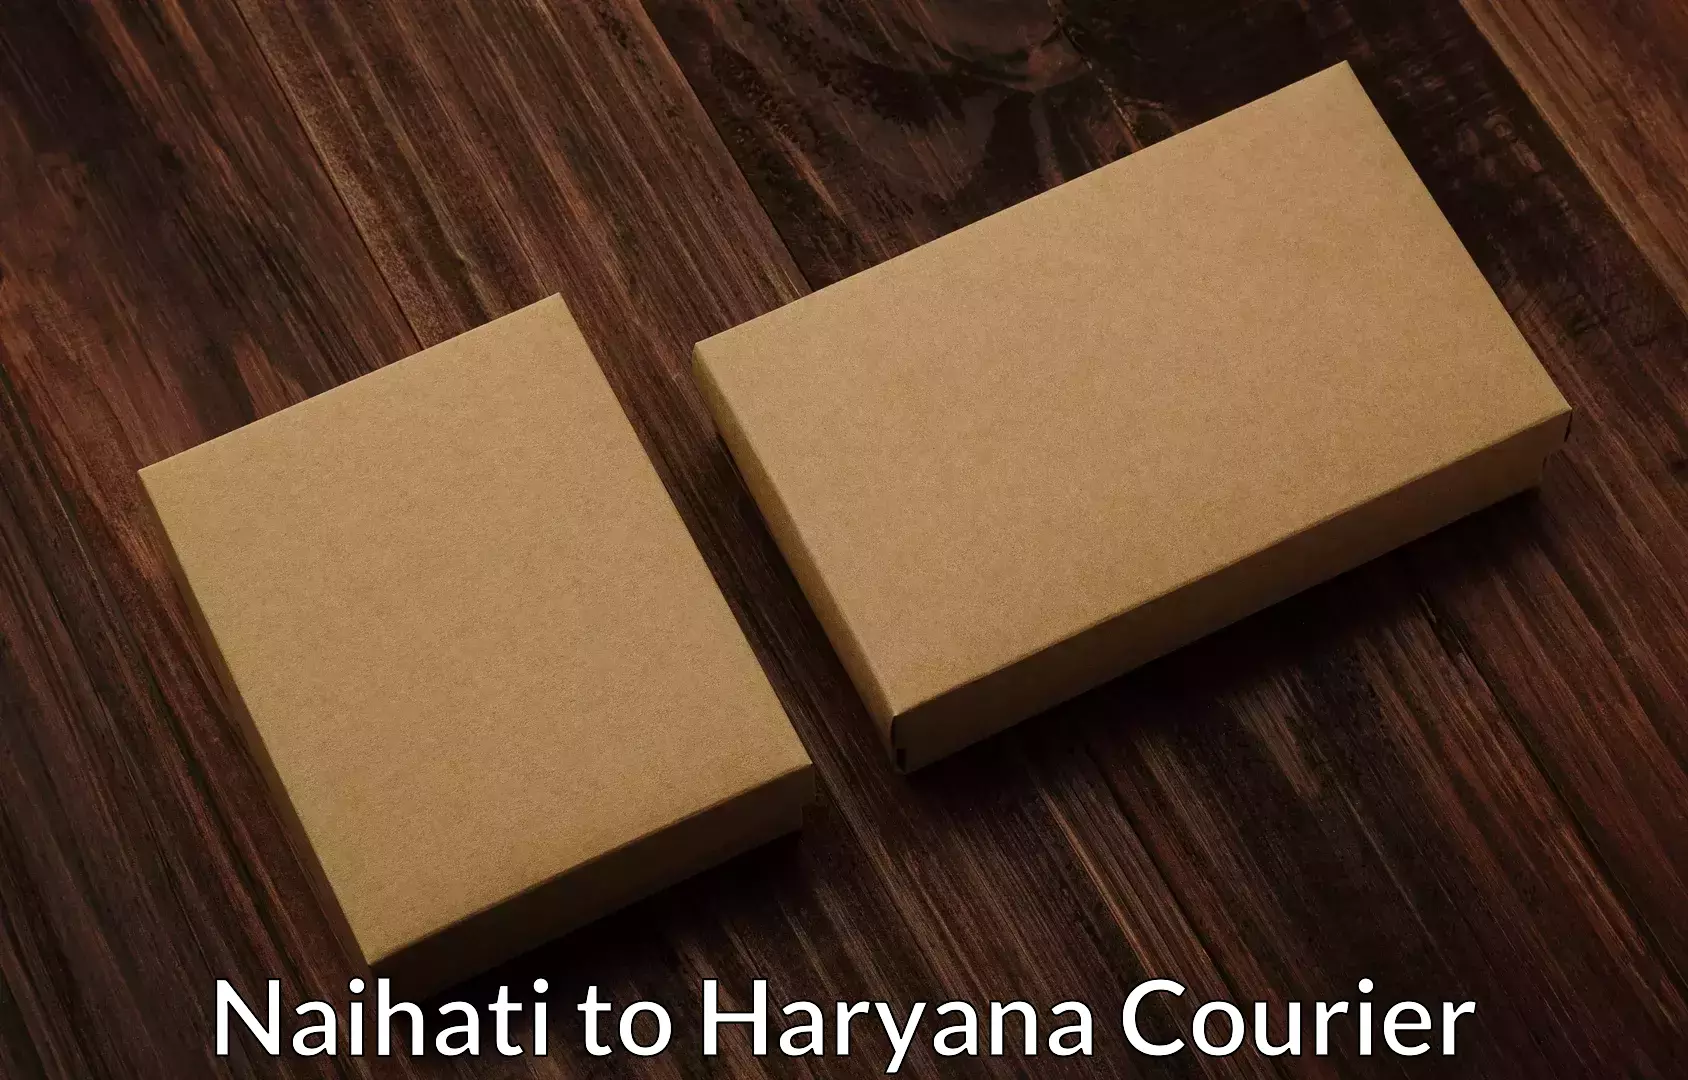 Seamless moving process Naihati to Haryana